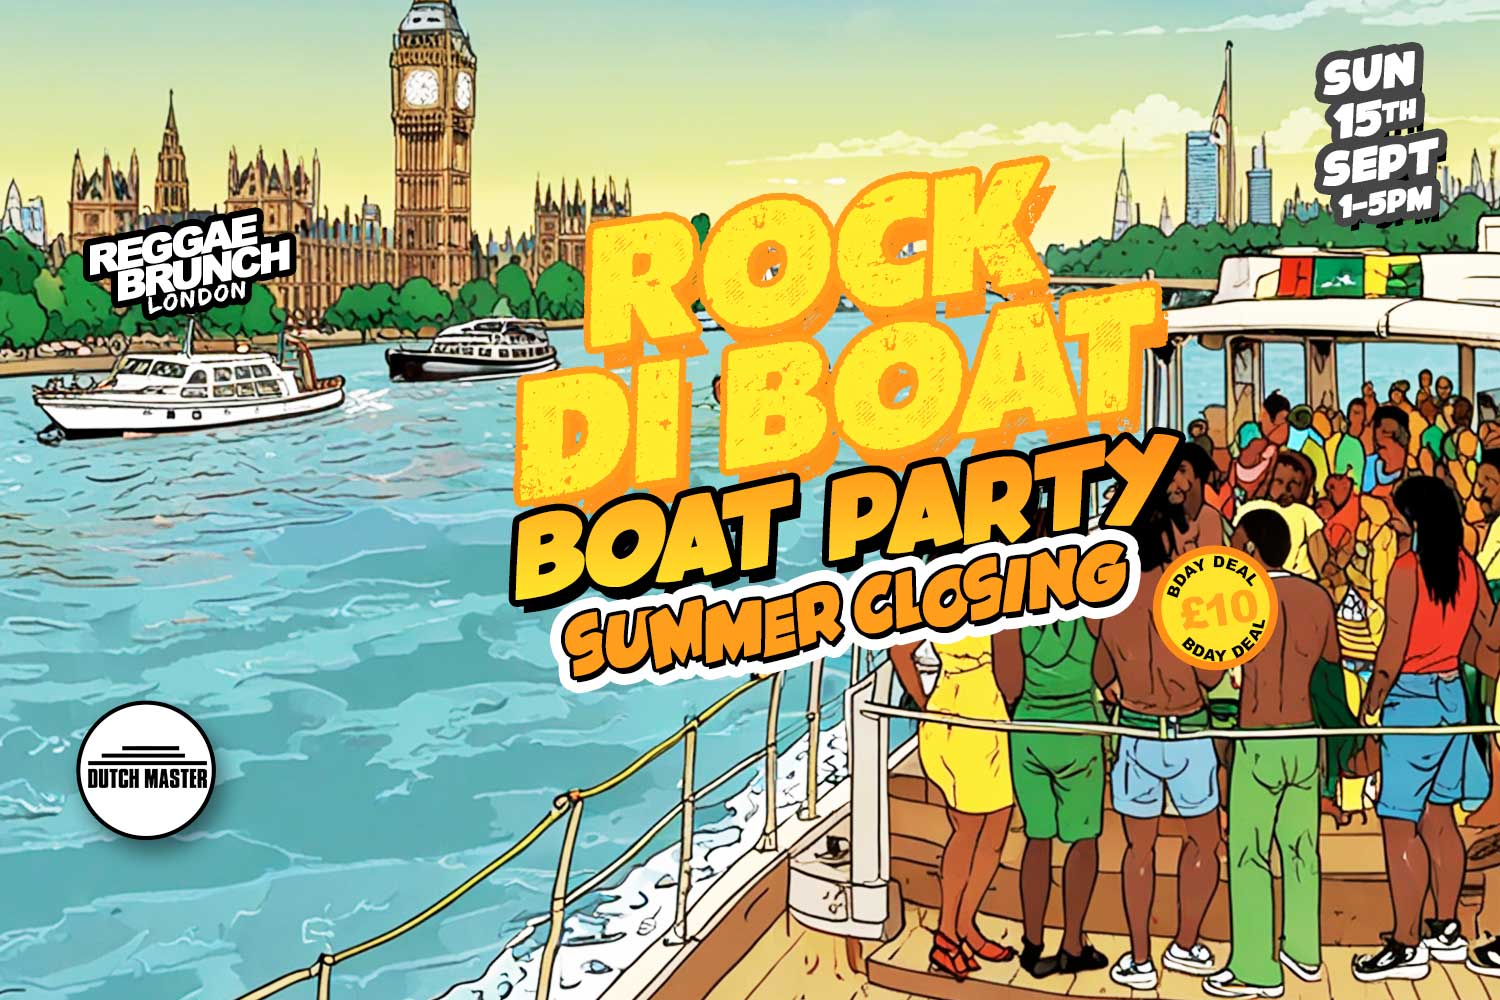 Sun, 15 Sept | Rock di boat Summer Closing